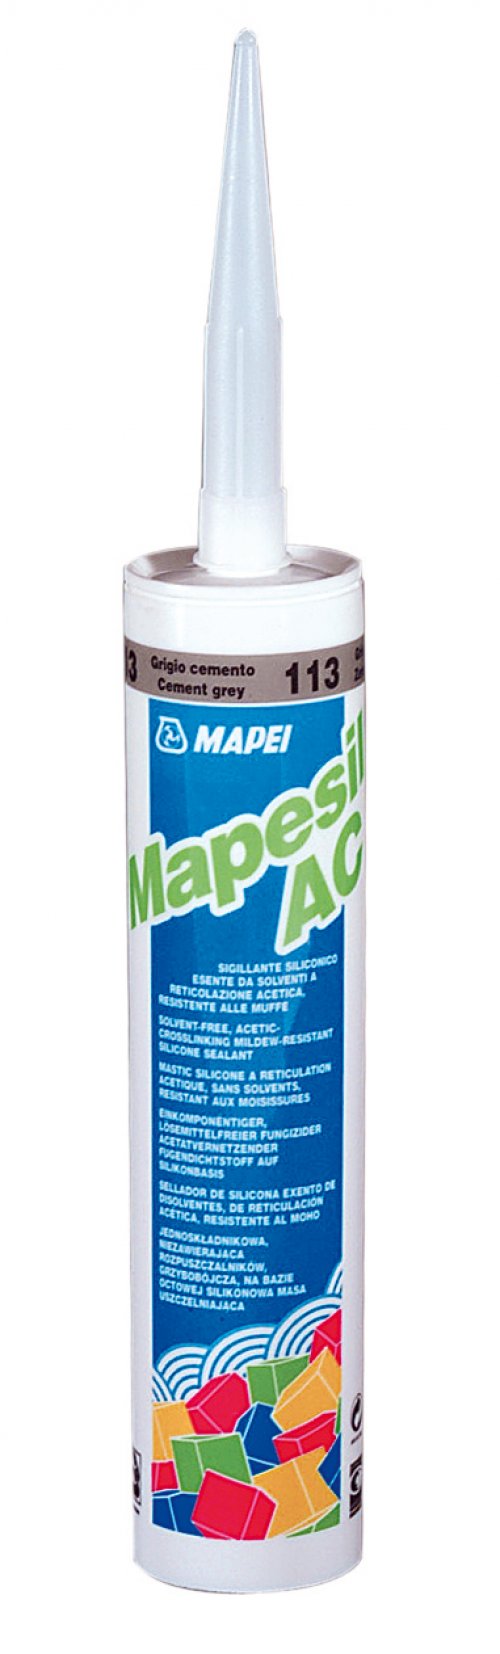 MAPESIL AC 103 Mapei spárovací těsnící hmota MĚSÍČNÍ BÍLÁ 310ml preview